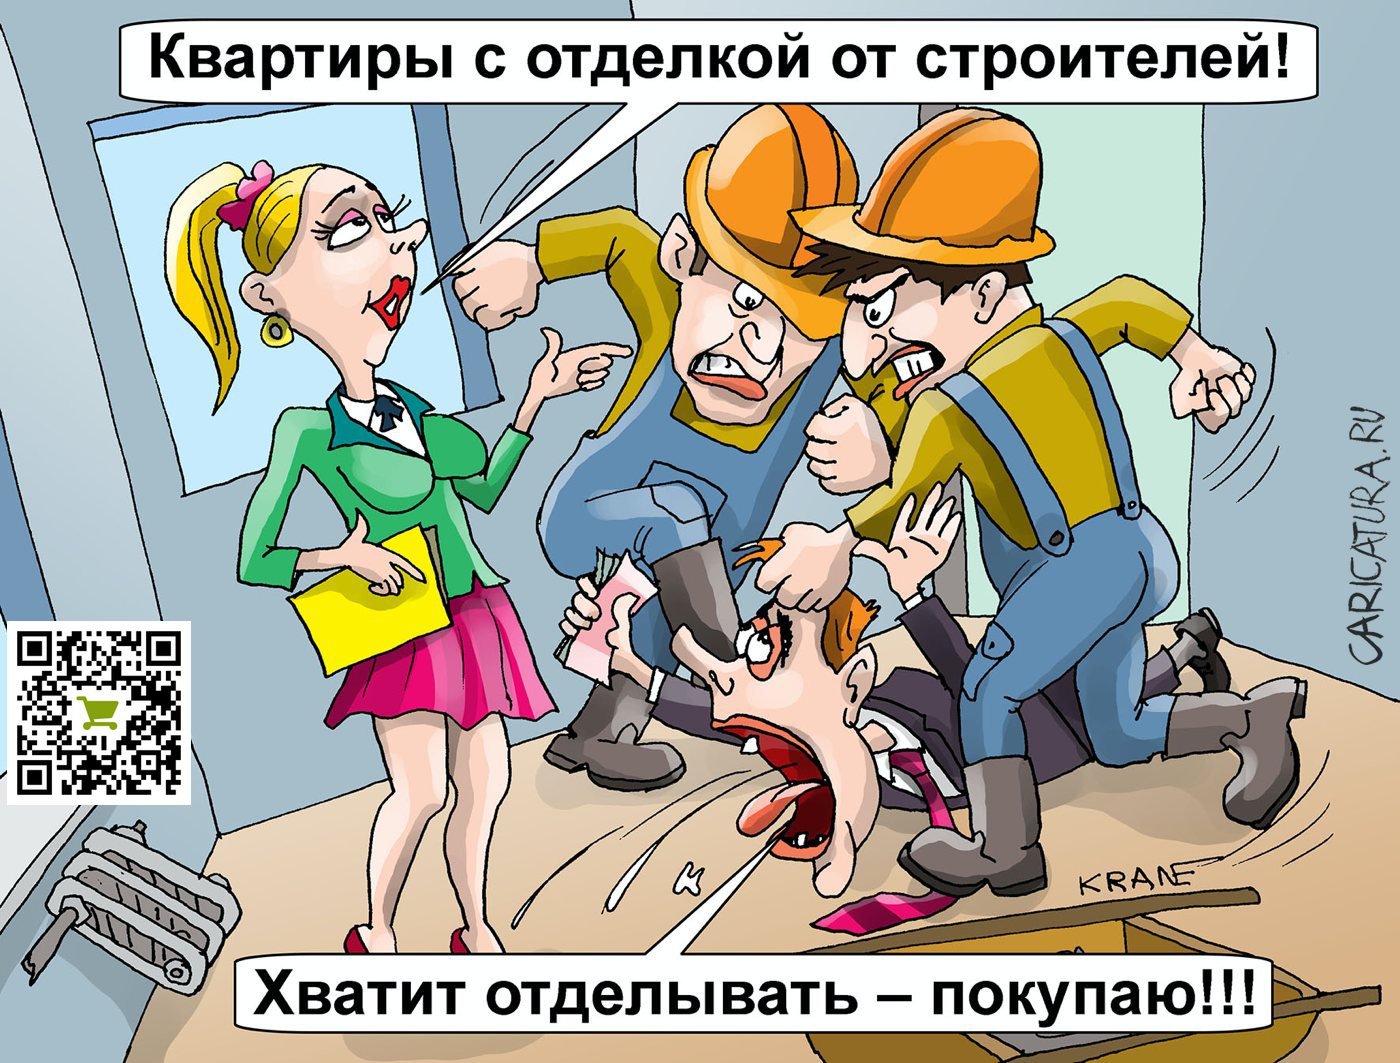 Карикатура "Квартиры с отделкой от строителей", Евгений Кран